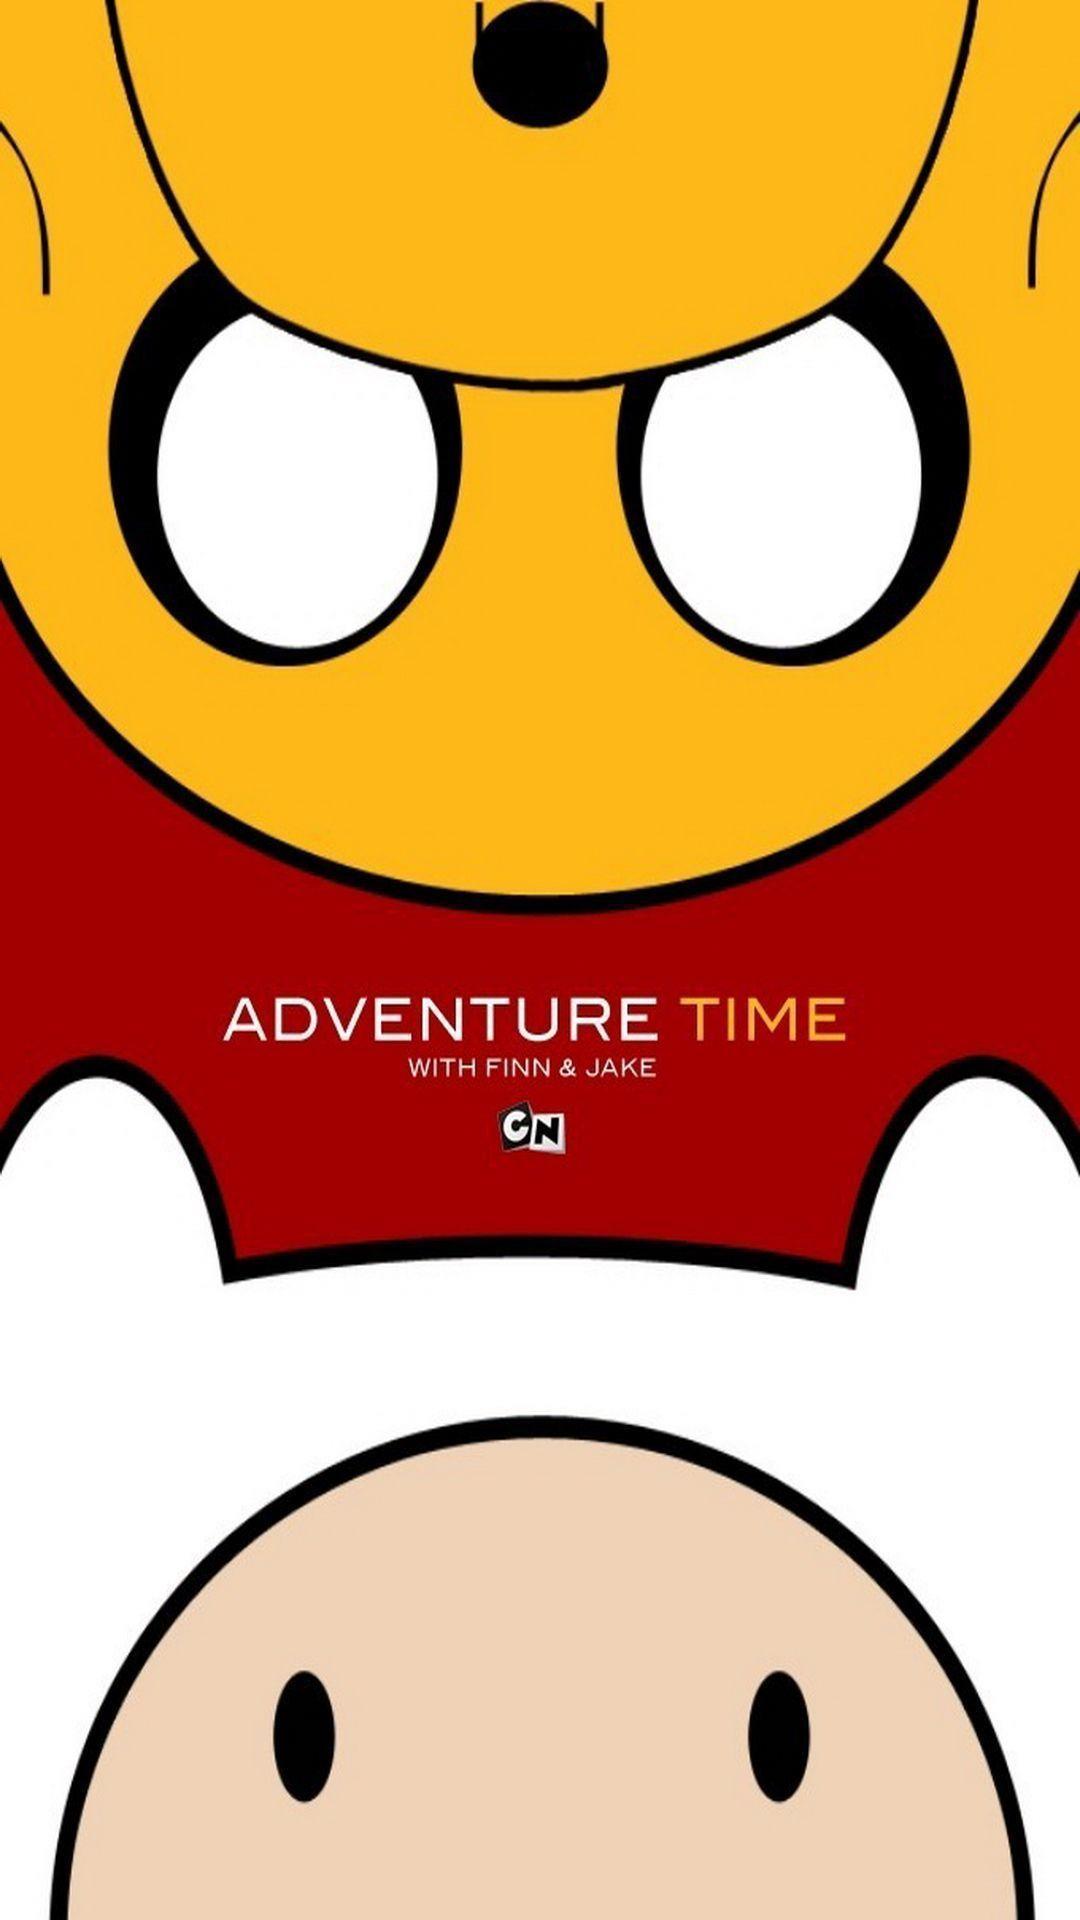 fond d'écran de temps d'aventure,dessin animé,rouge,jaune,orange,clipart